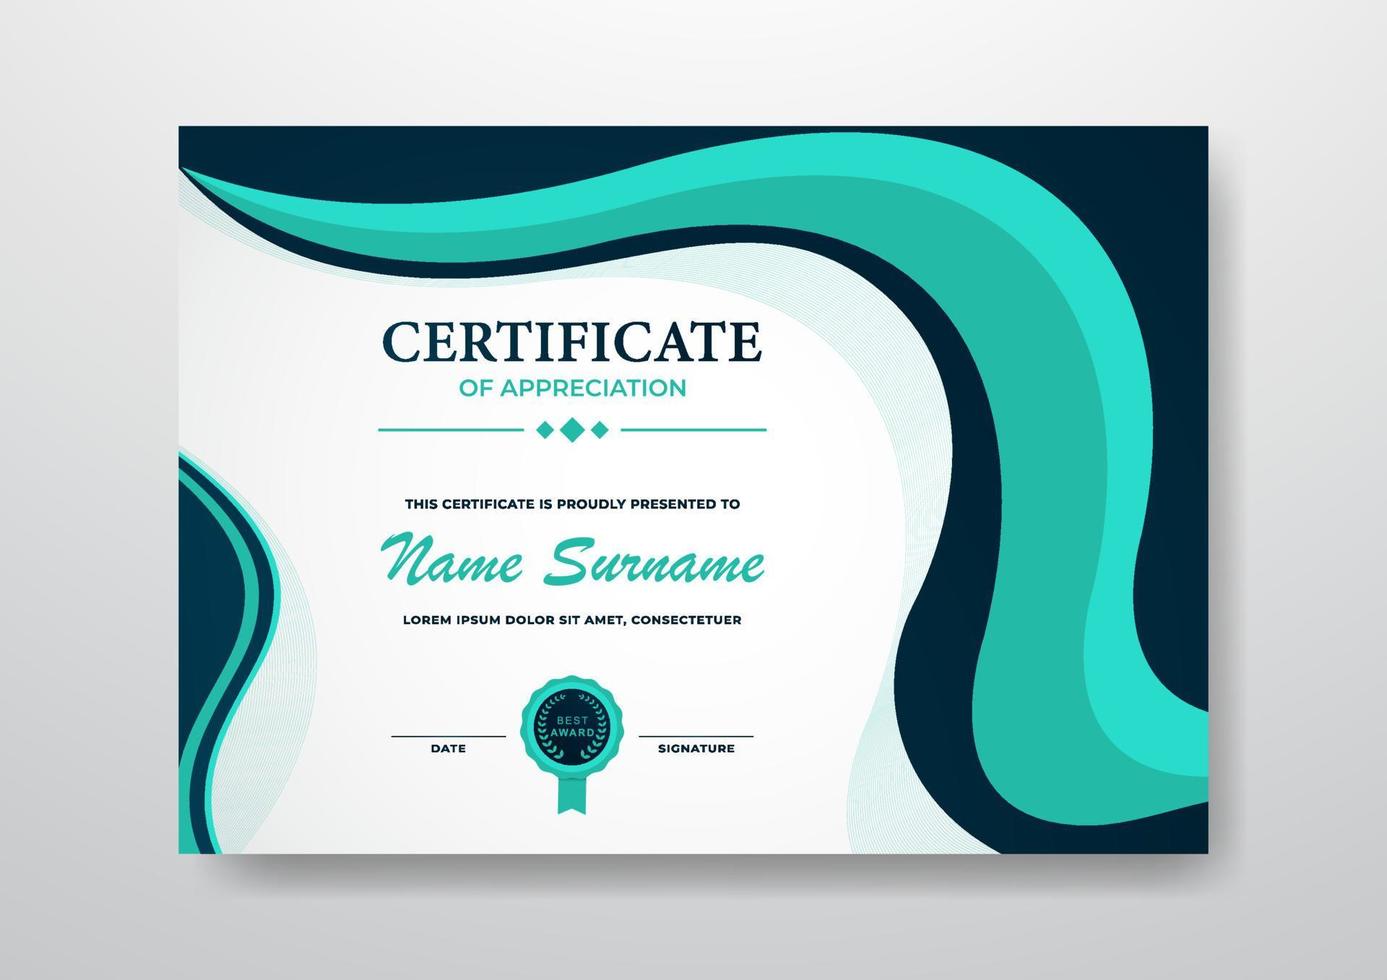 diseño de plantilla de certificado elegante y hermoso para empresas, graduación y organización vector